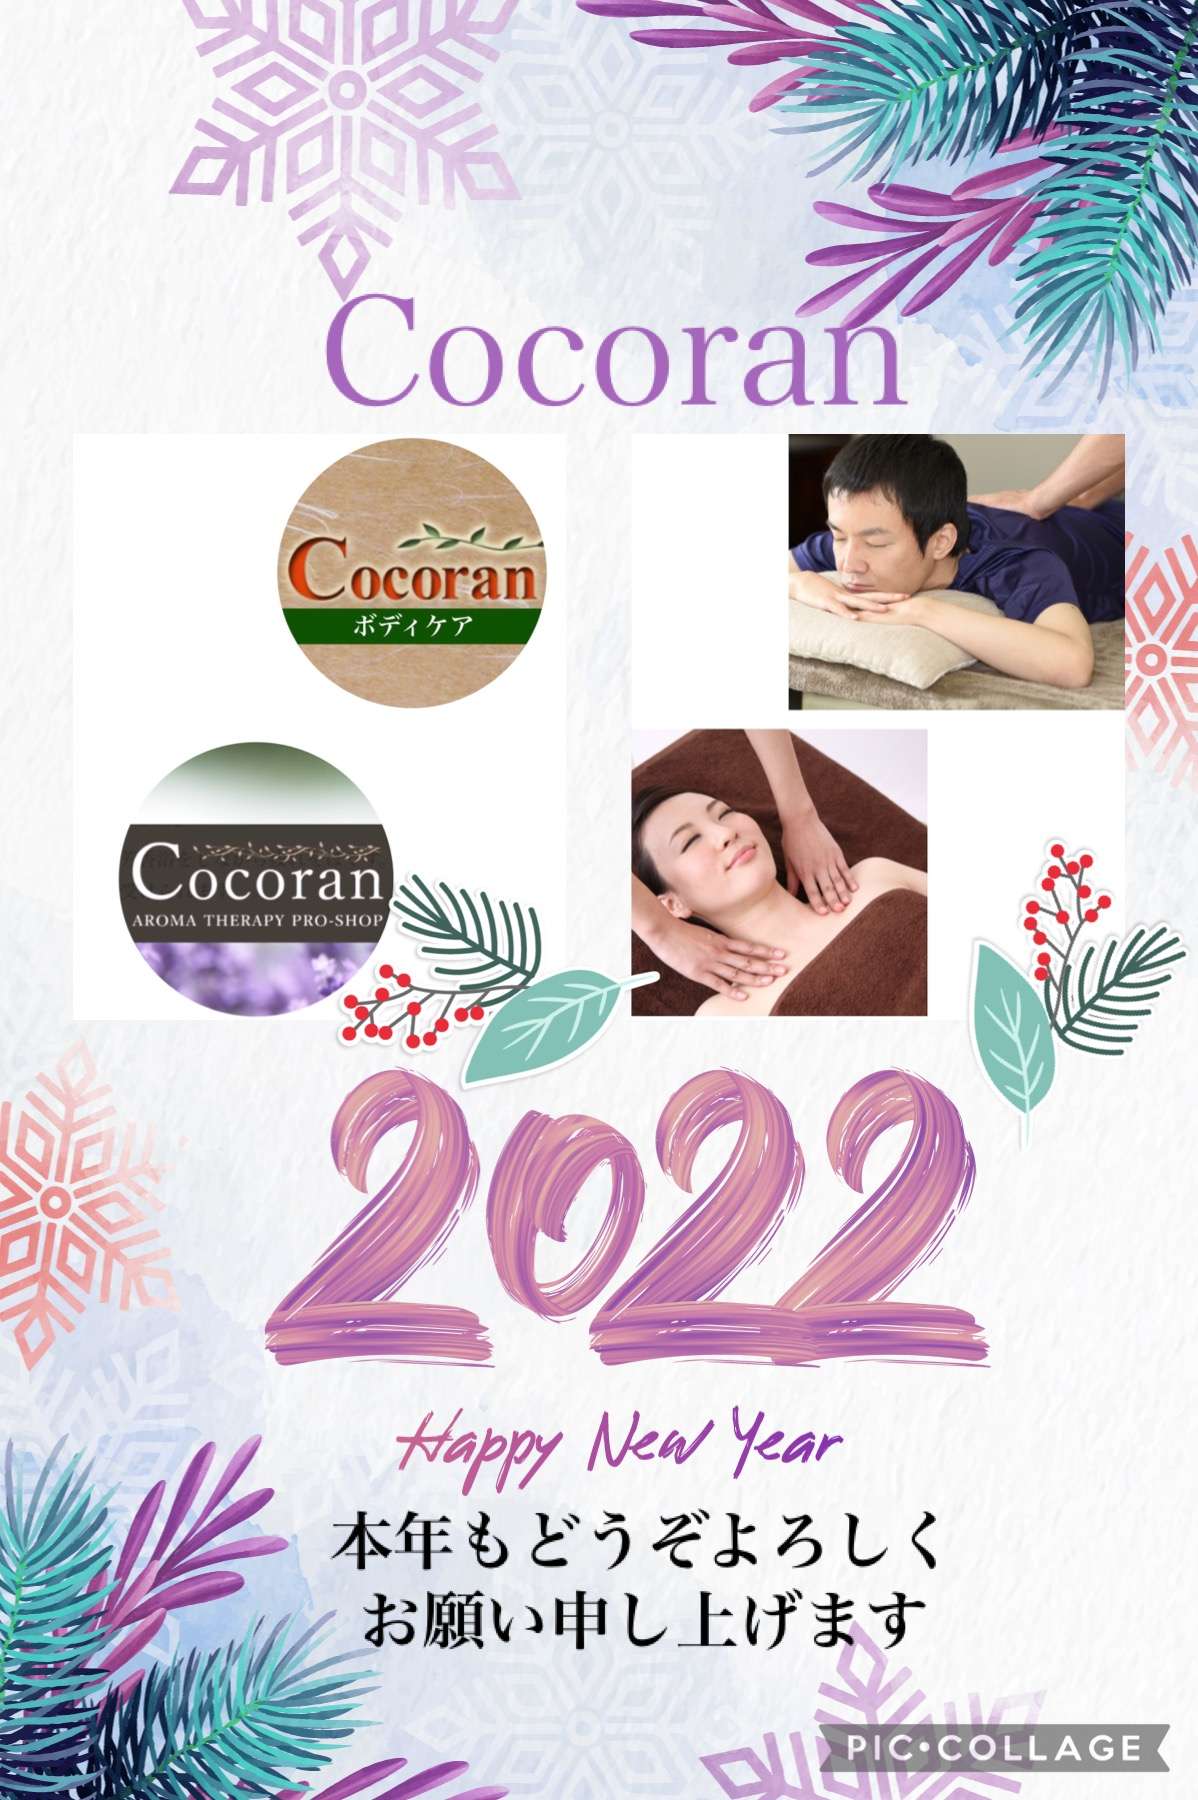 cocoran 新年のご挨拶